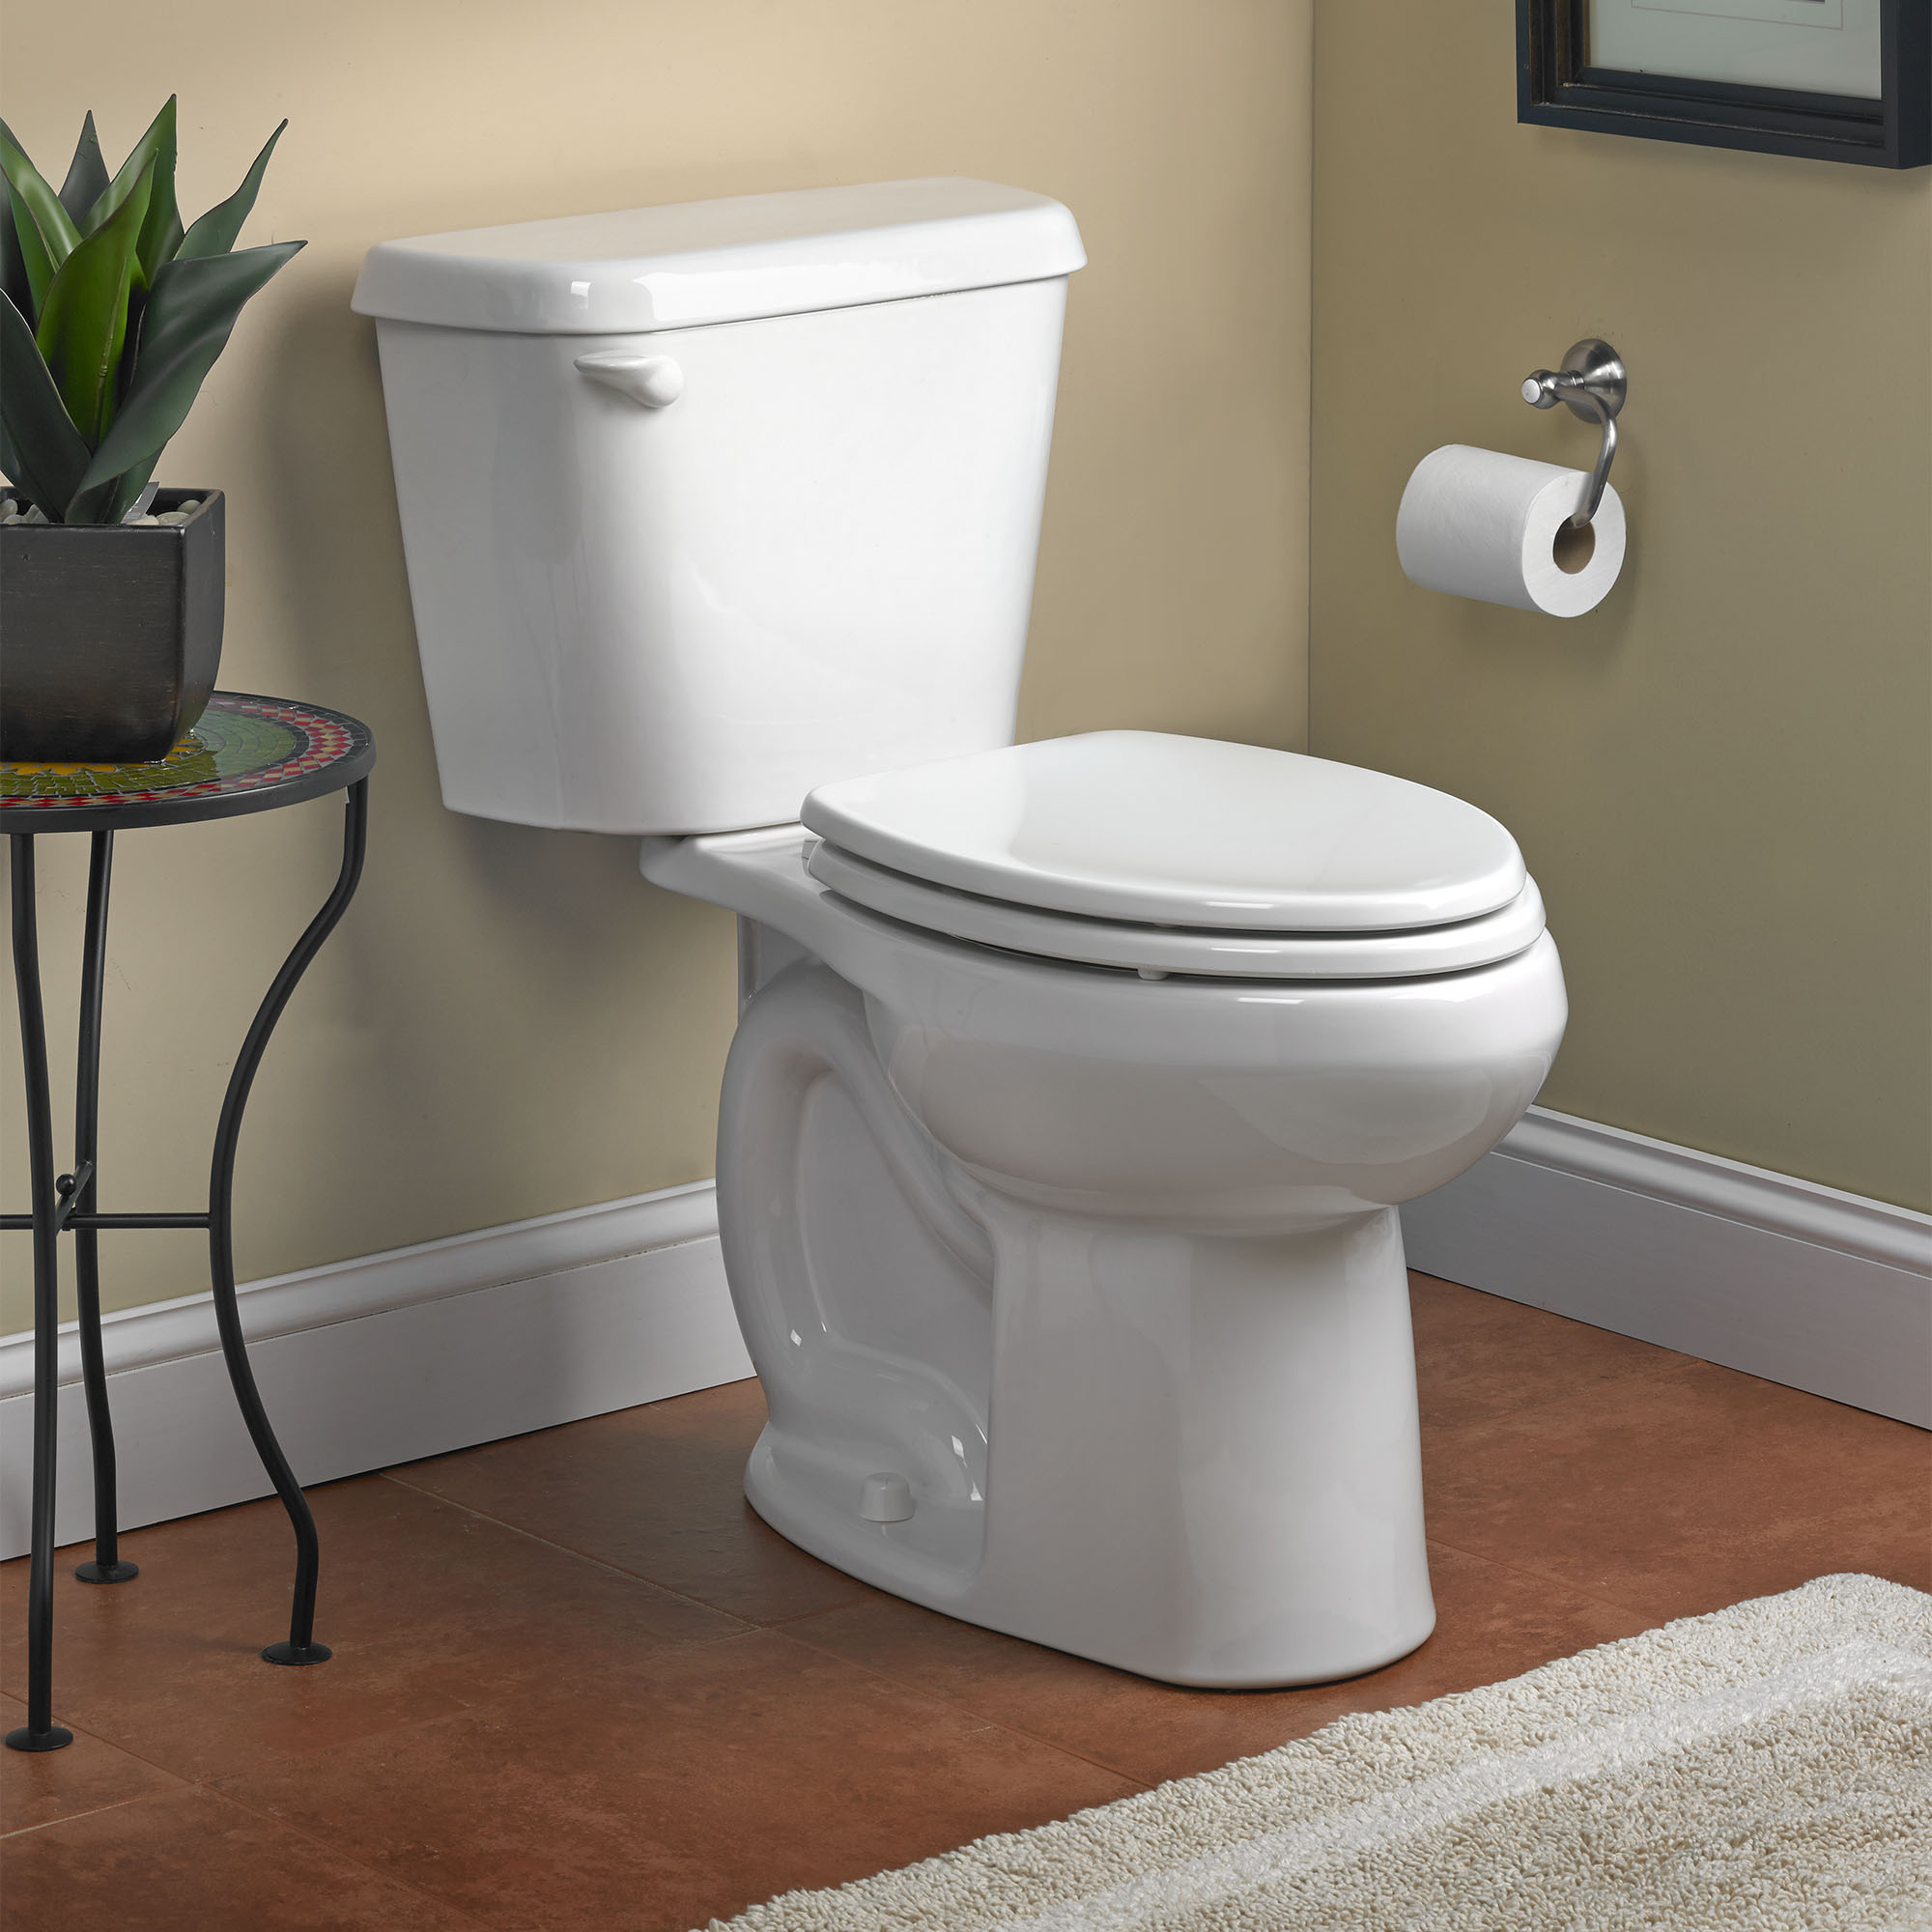 Toilette Colony, 2 pièces, 1,28 gpc/4,8 lpc, à cuvette allongée à hauteur de chaise, à encastrer 10 po, sans siège